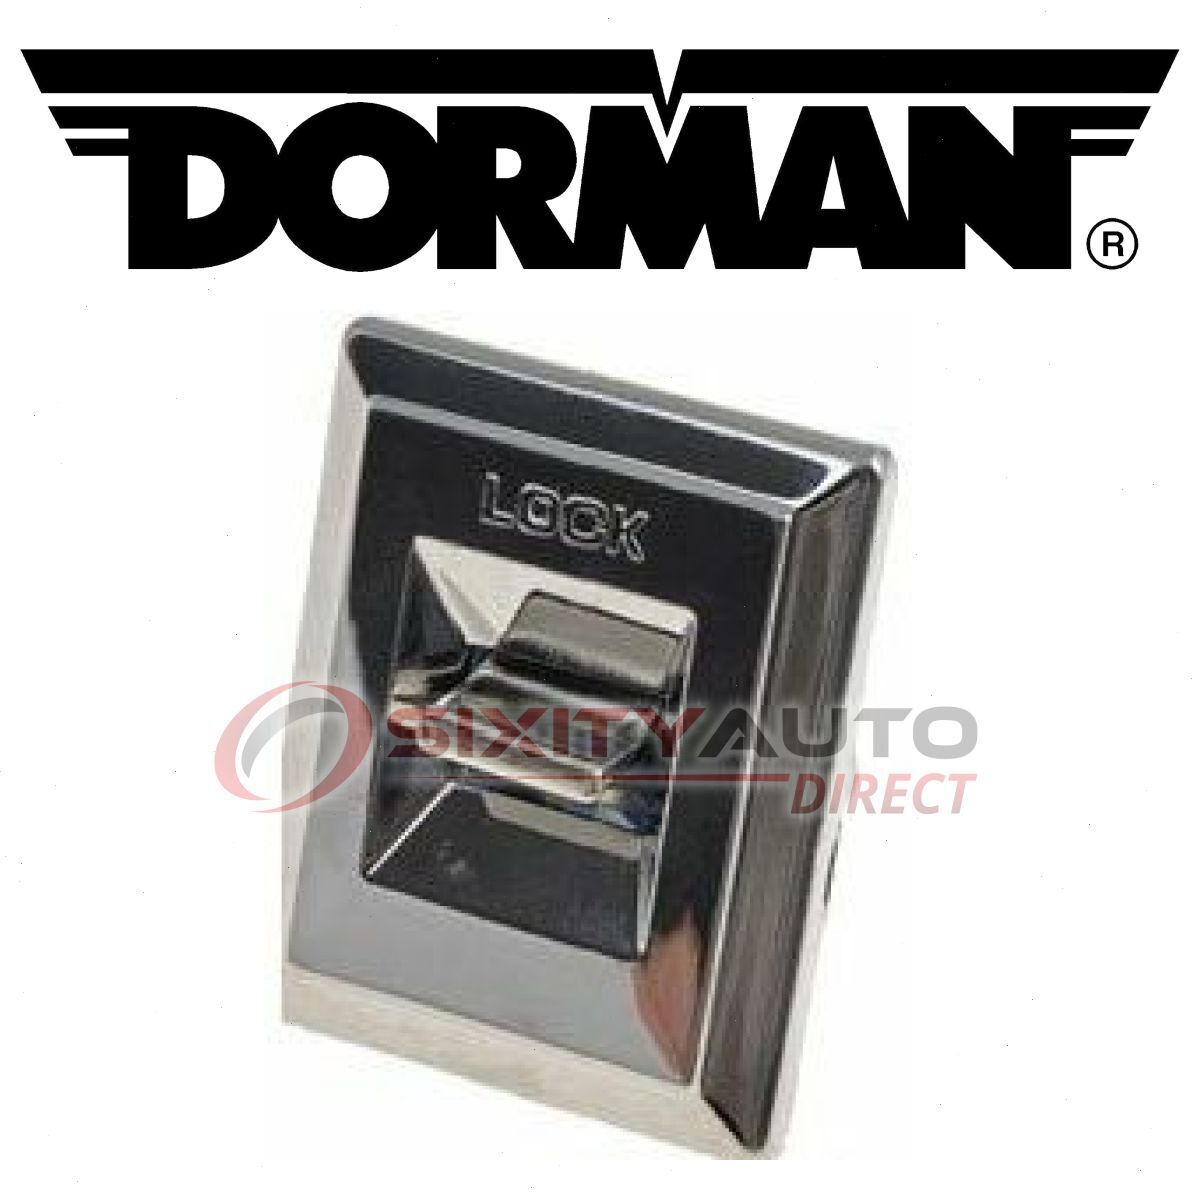 Dorman Front Left Door Lock Switch for 1978-1987 Oldsmobile Cutlass rv